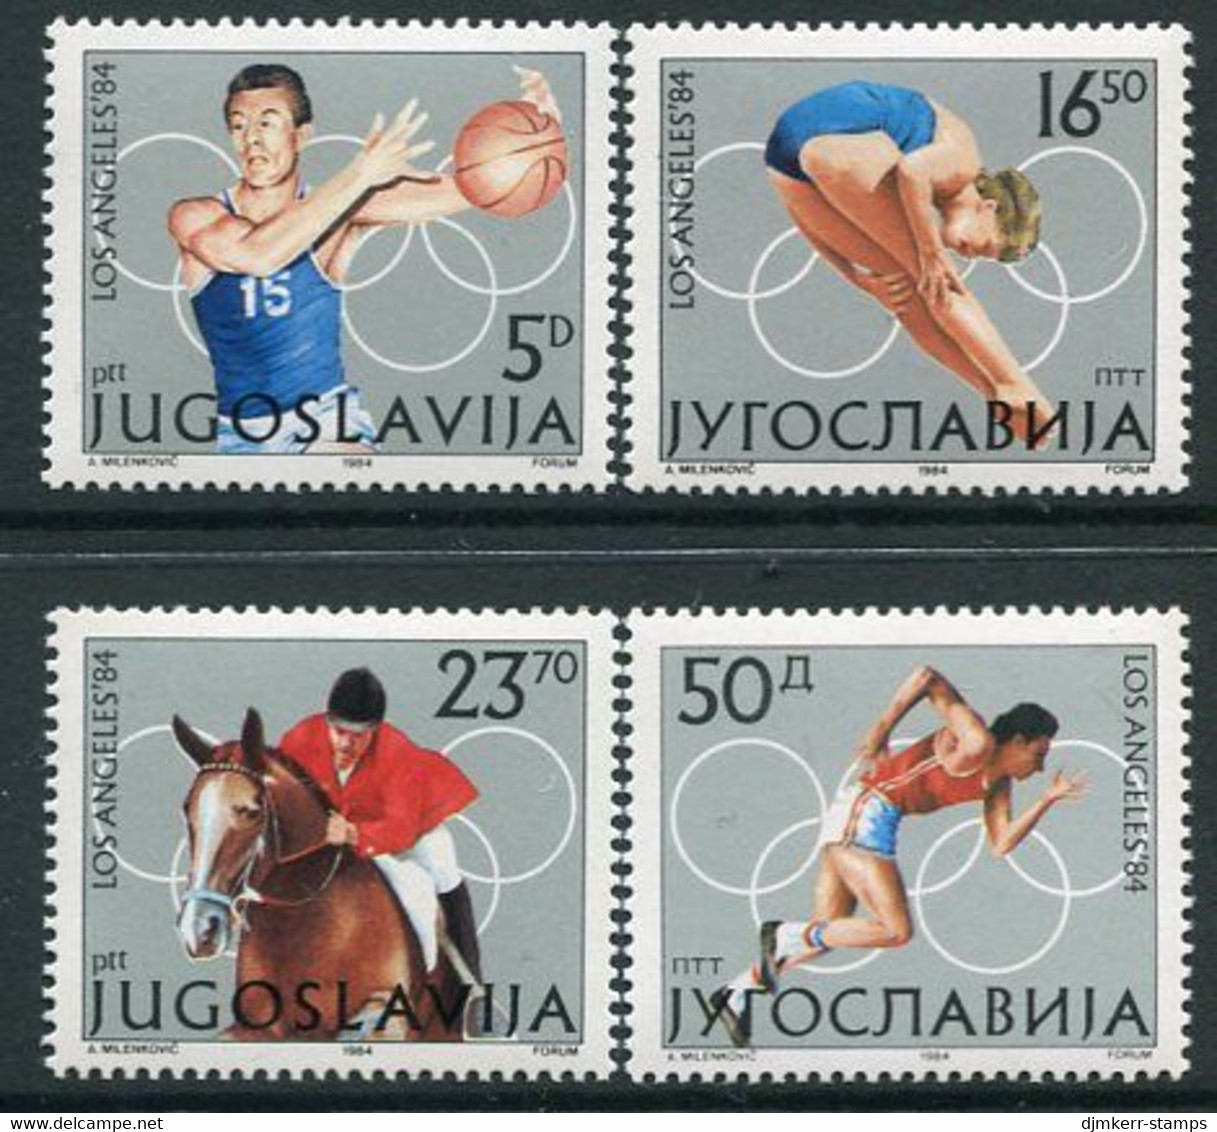 YUGOSLAVIA 1984  Olympic Games, Los Angeles  MNH / **.  Michel 2048-51 - Nuevos